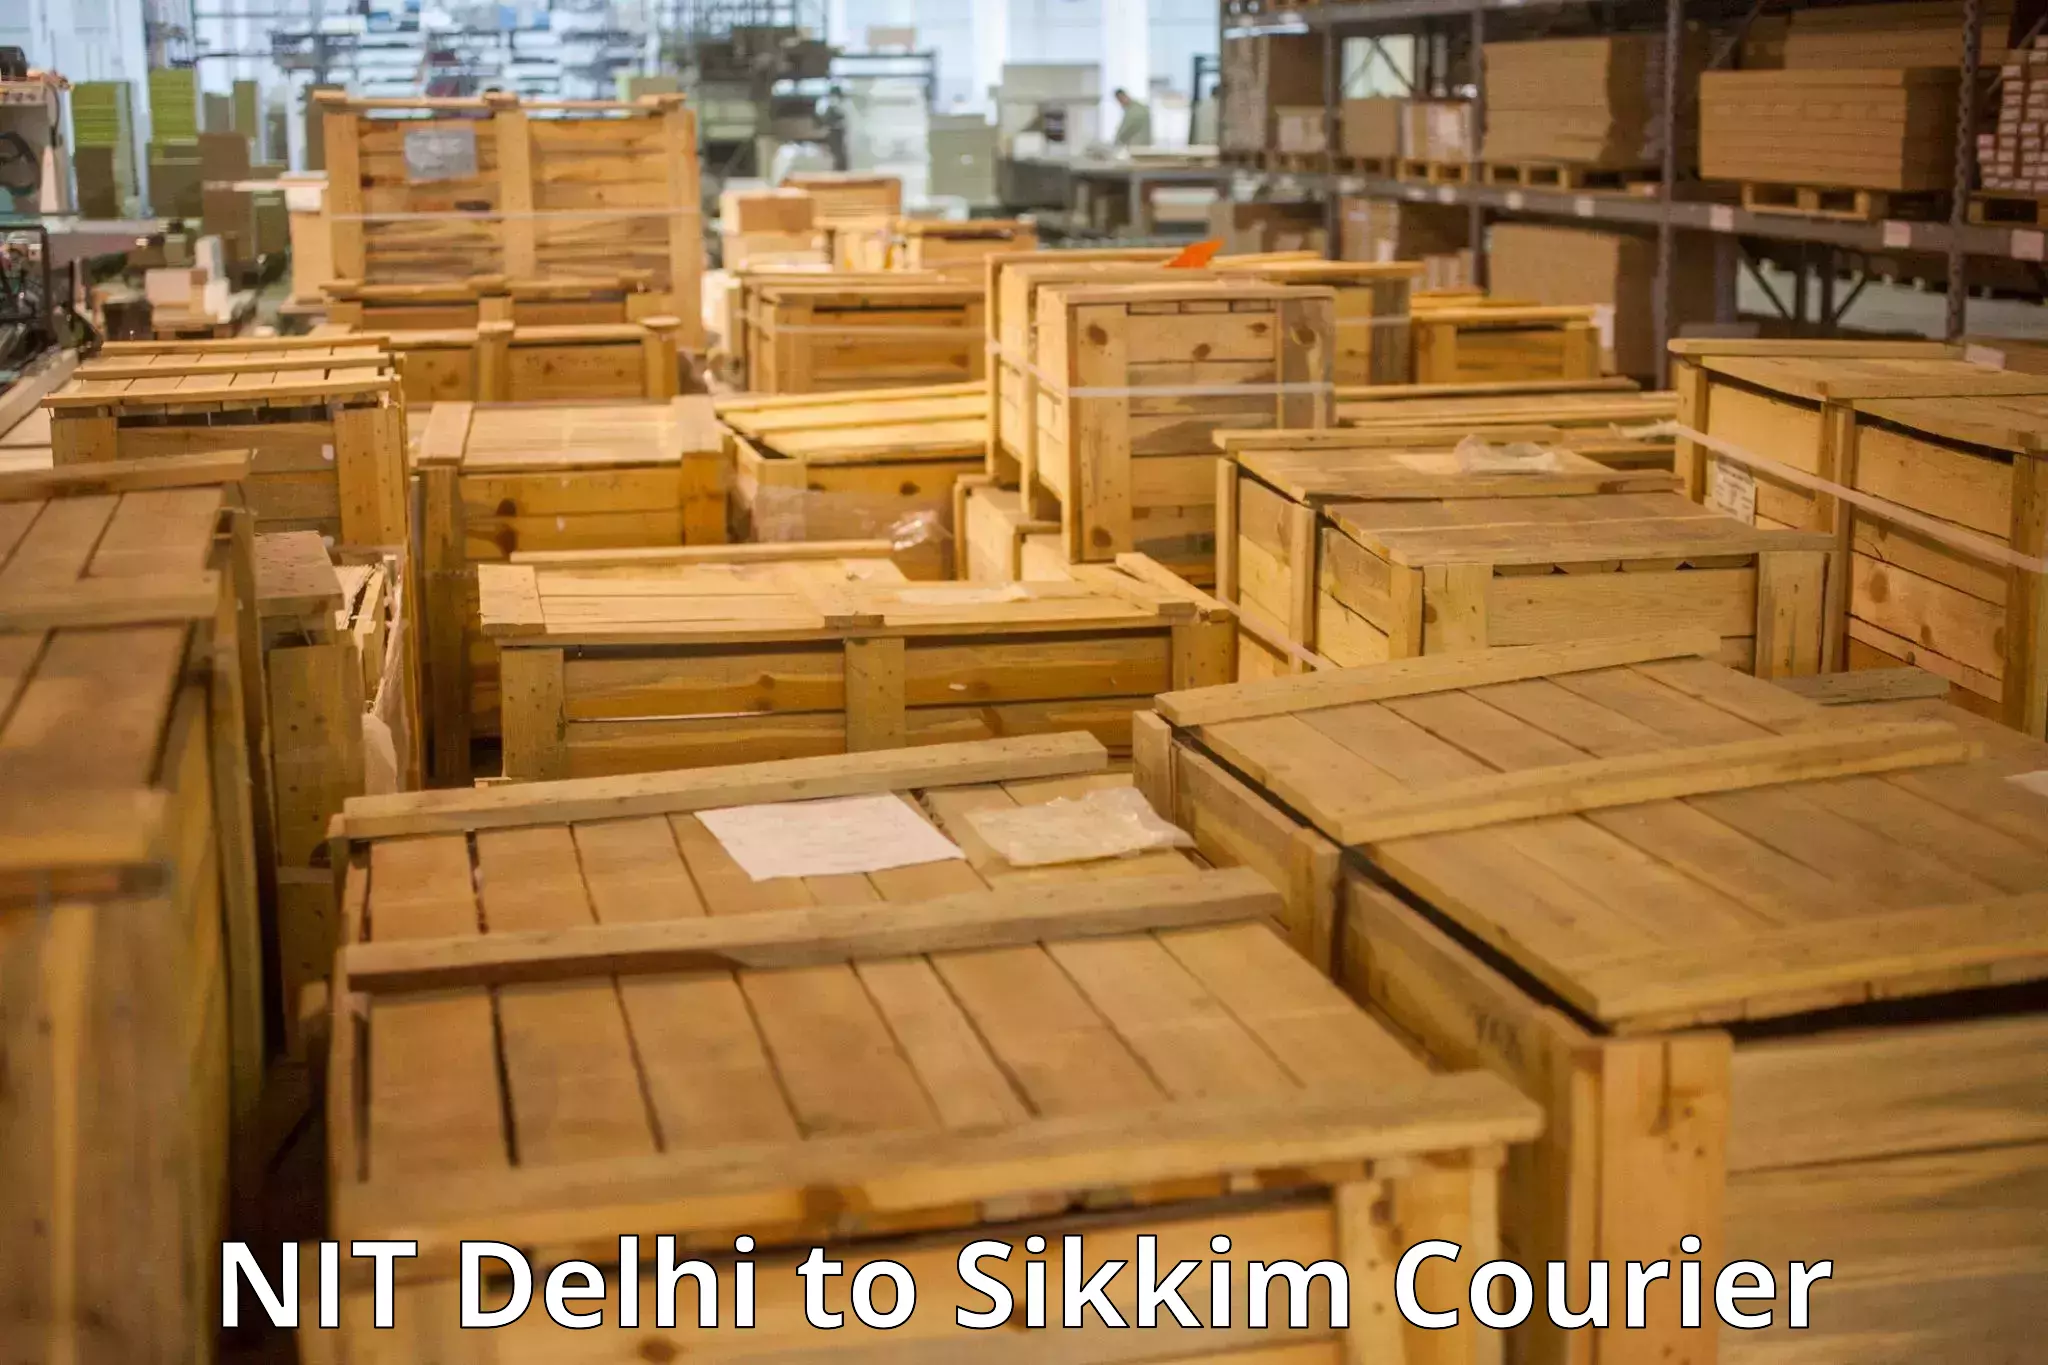 Door-to-door baggage service in NIT Delhi to North Sikkim